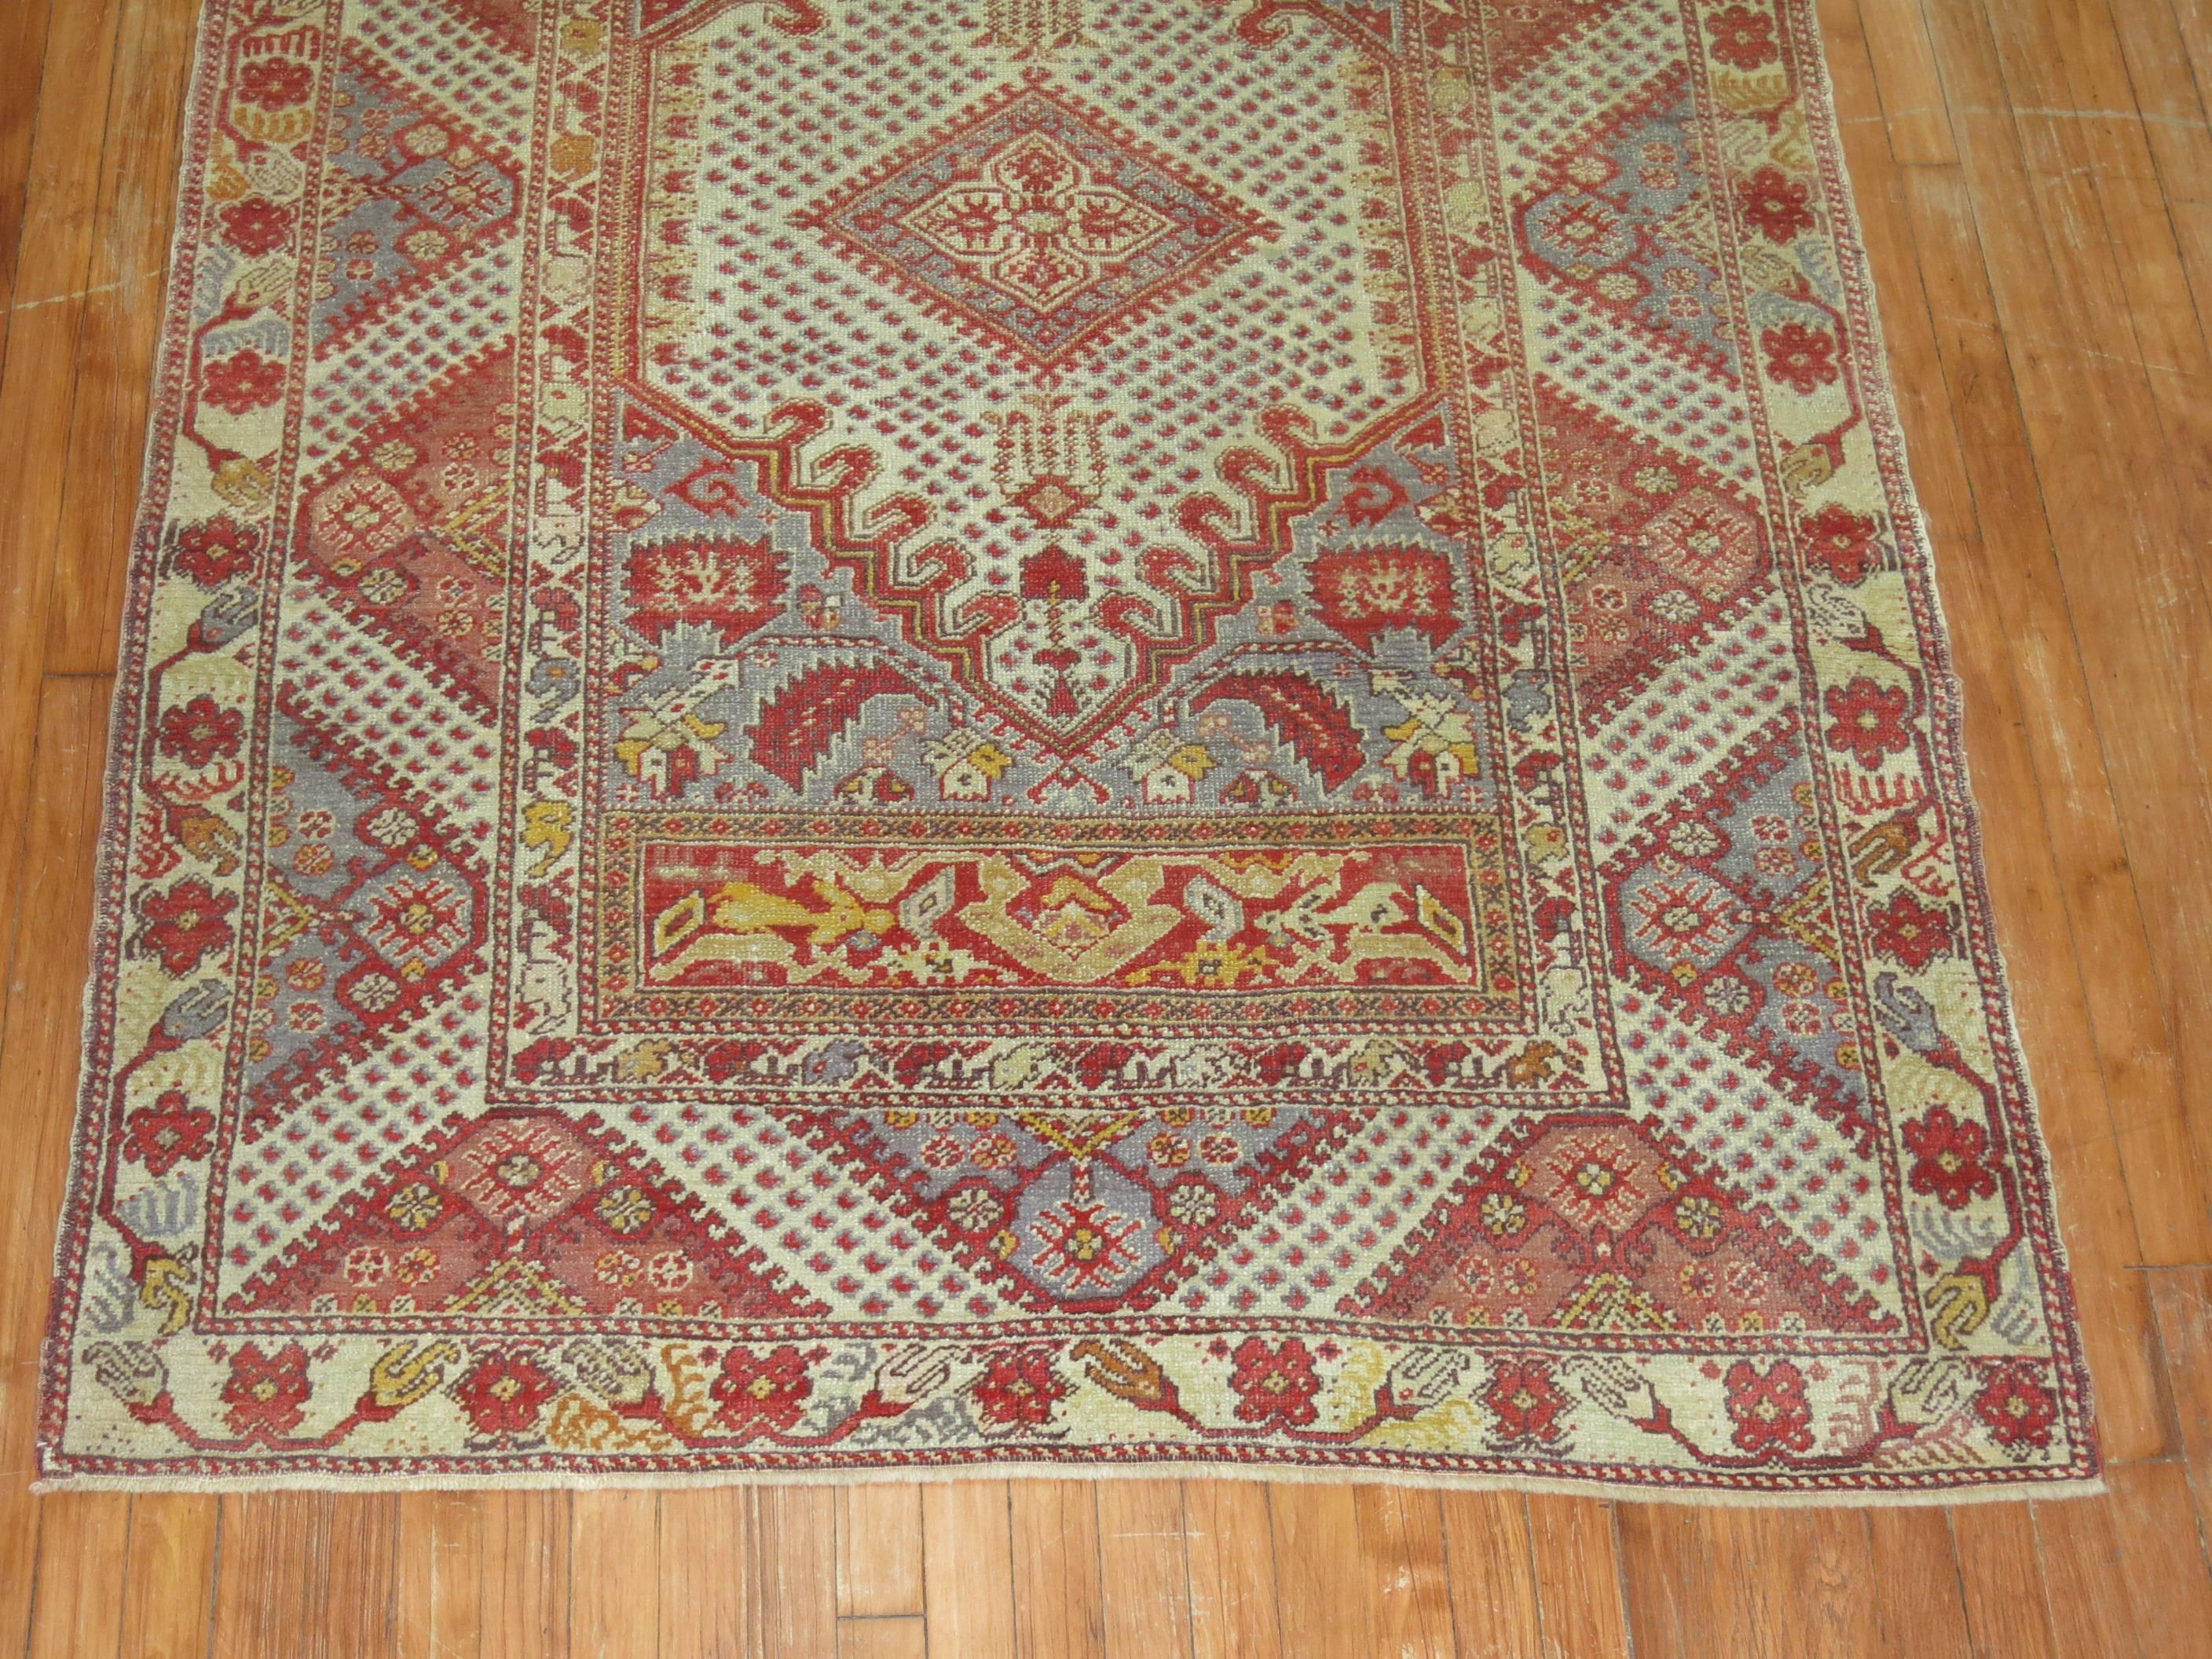 Authentique tapis Ghiordes turc unique en son genre.

Depuis le début de leur production au 18e siècle, les tapis de la ville turque de Ghiordes sont surtout connus pour leurs motifs de prière anciens rectilignes, colorés et à multiples bordures.